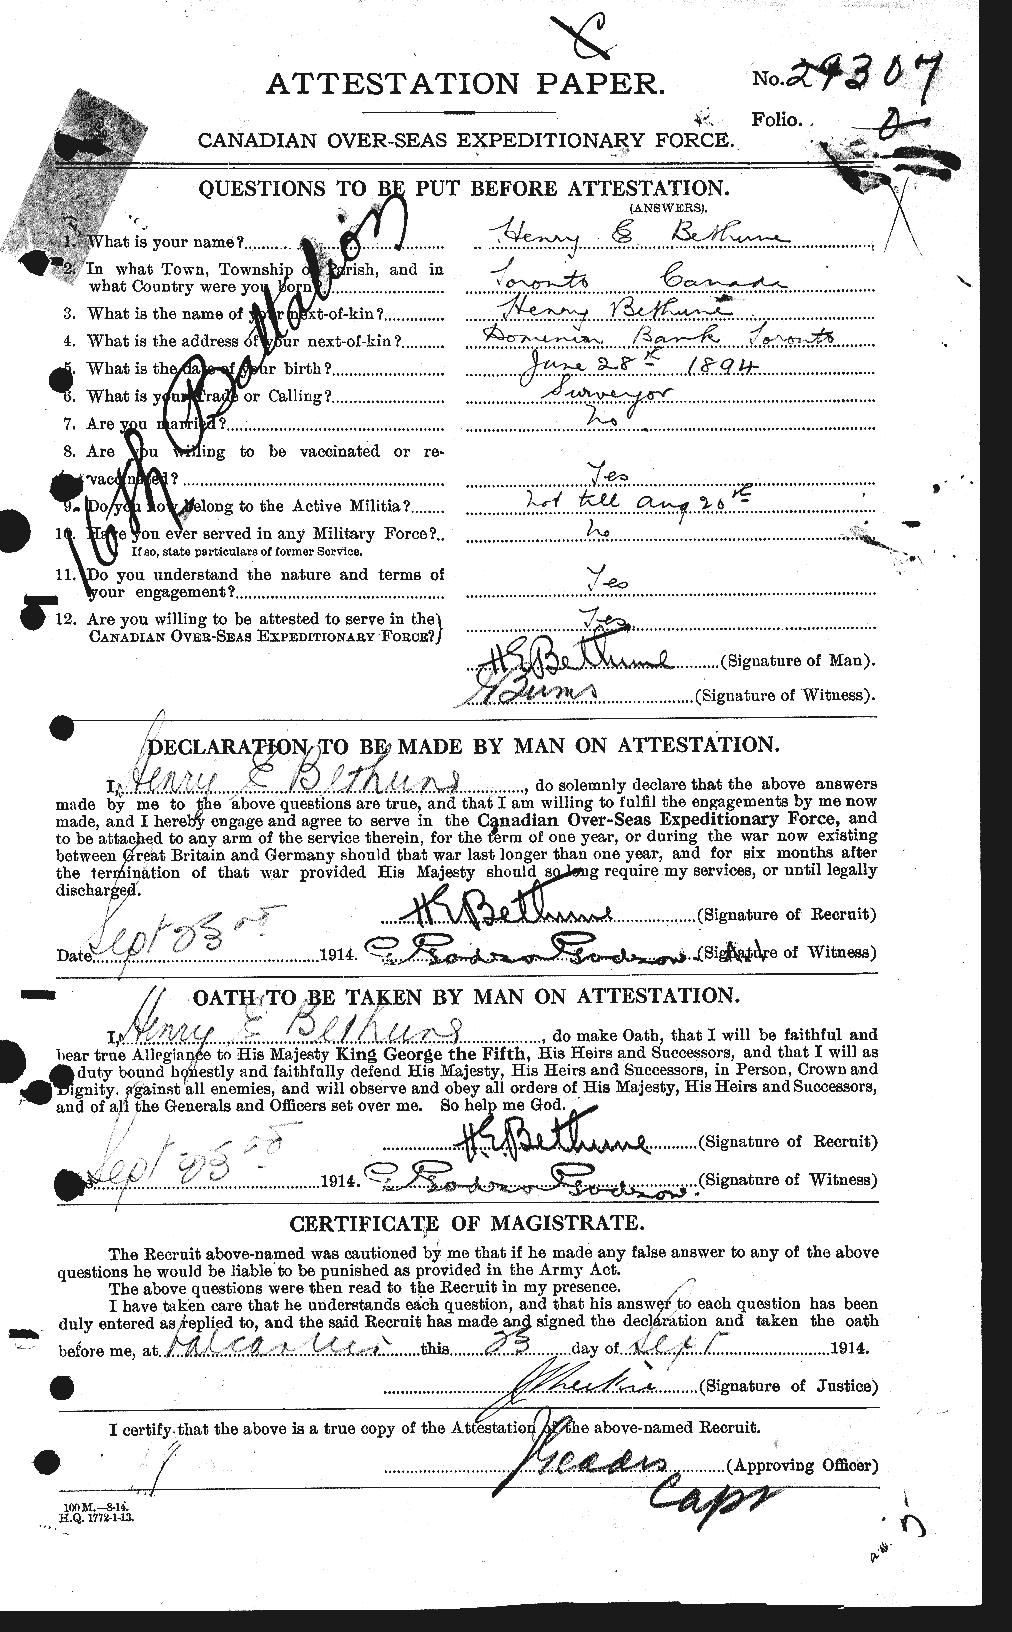 Dossiers du Personnel de la Première Guerre mondiale - CEC 237016a